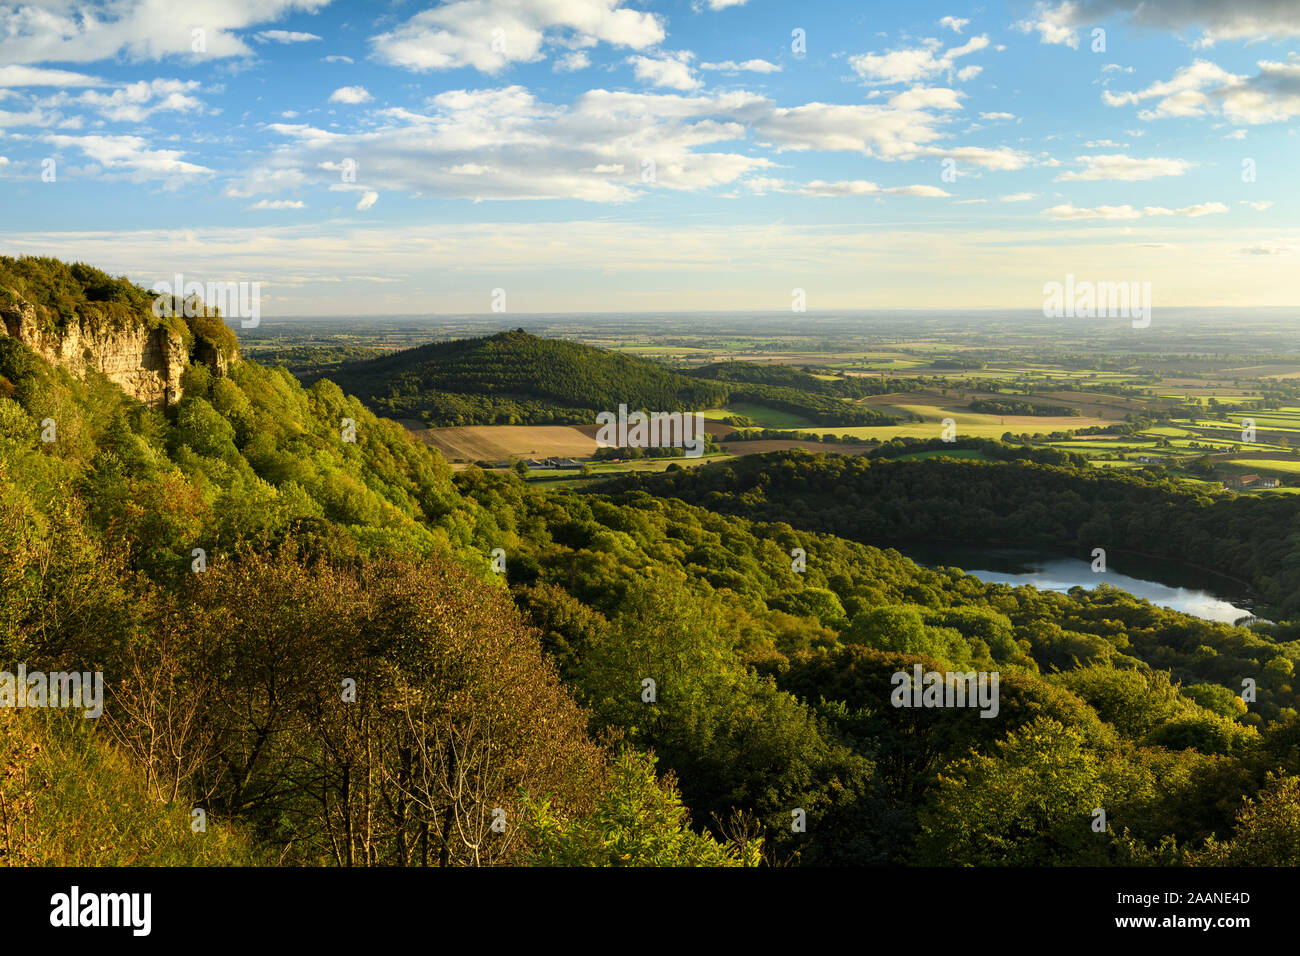 Landschaftlich schöne lange - Abstand (See Gormire, Haube Hill, Whitestone Felsen, Landschaft & blauer Himmel) - Sutton Bank, North Yorkshire, England, UK. Stockfoto